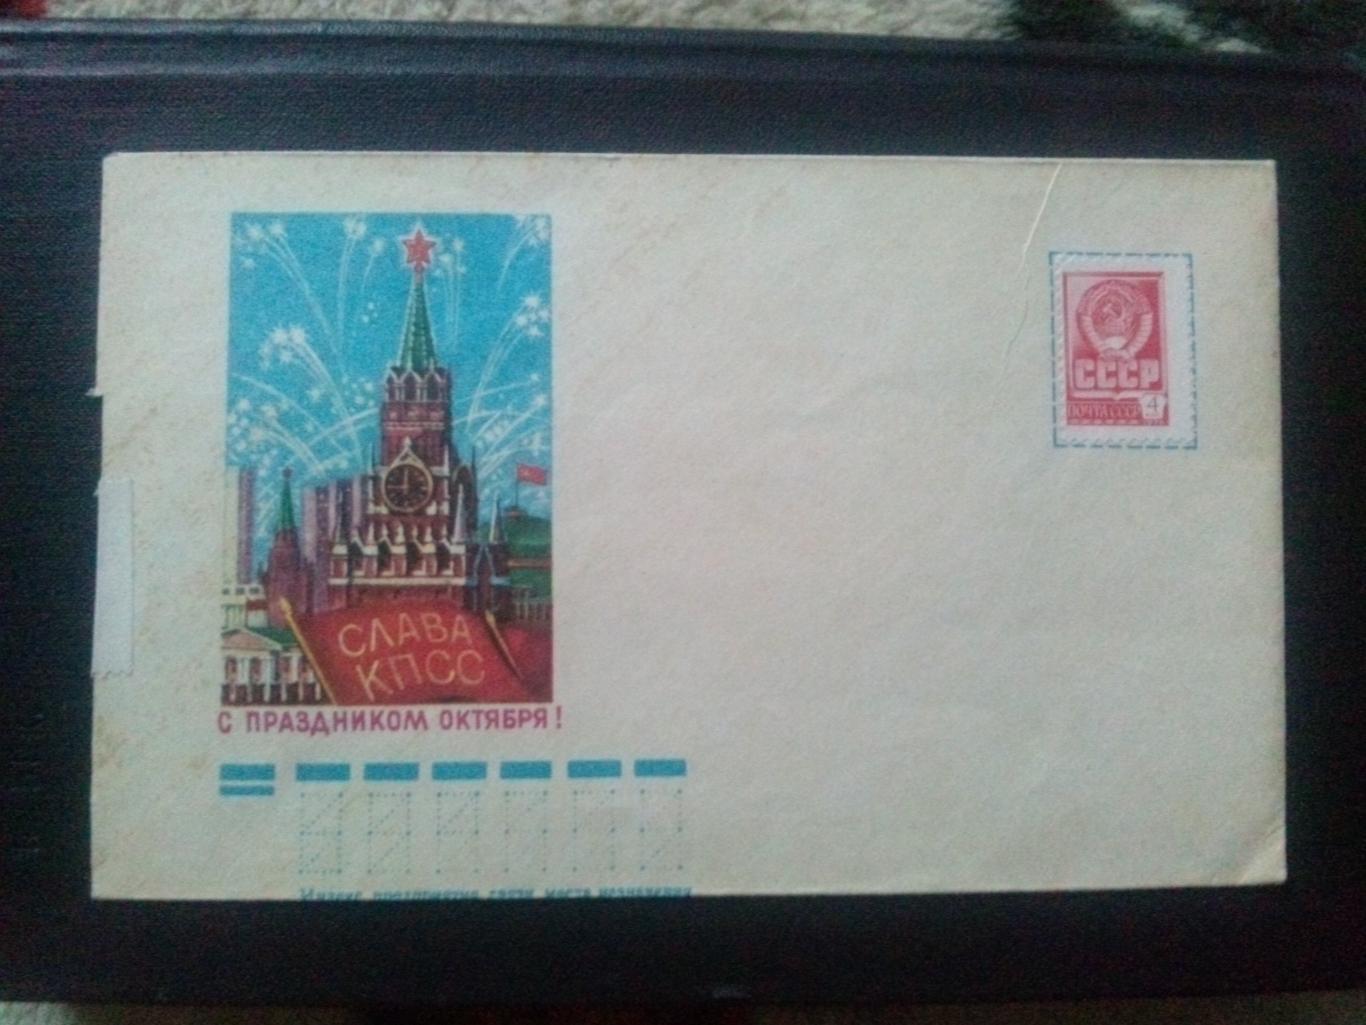 Художественный маркированный конверт : С праздником Октября ! 70 - е годы марка